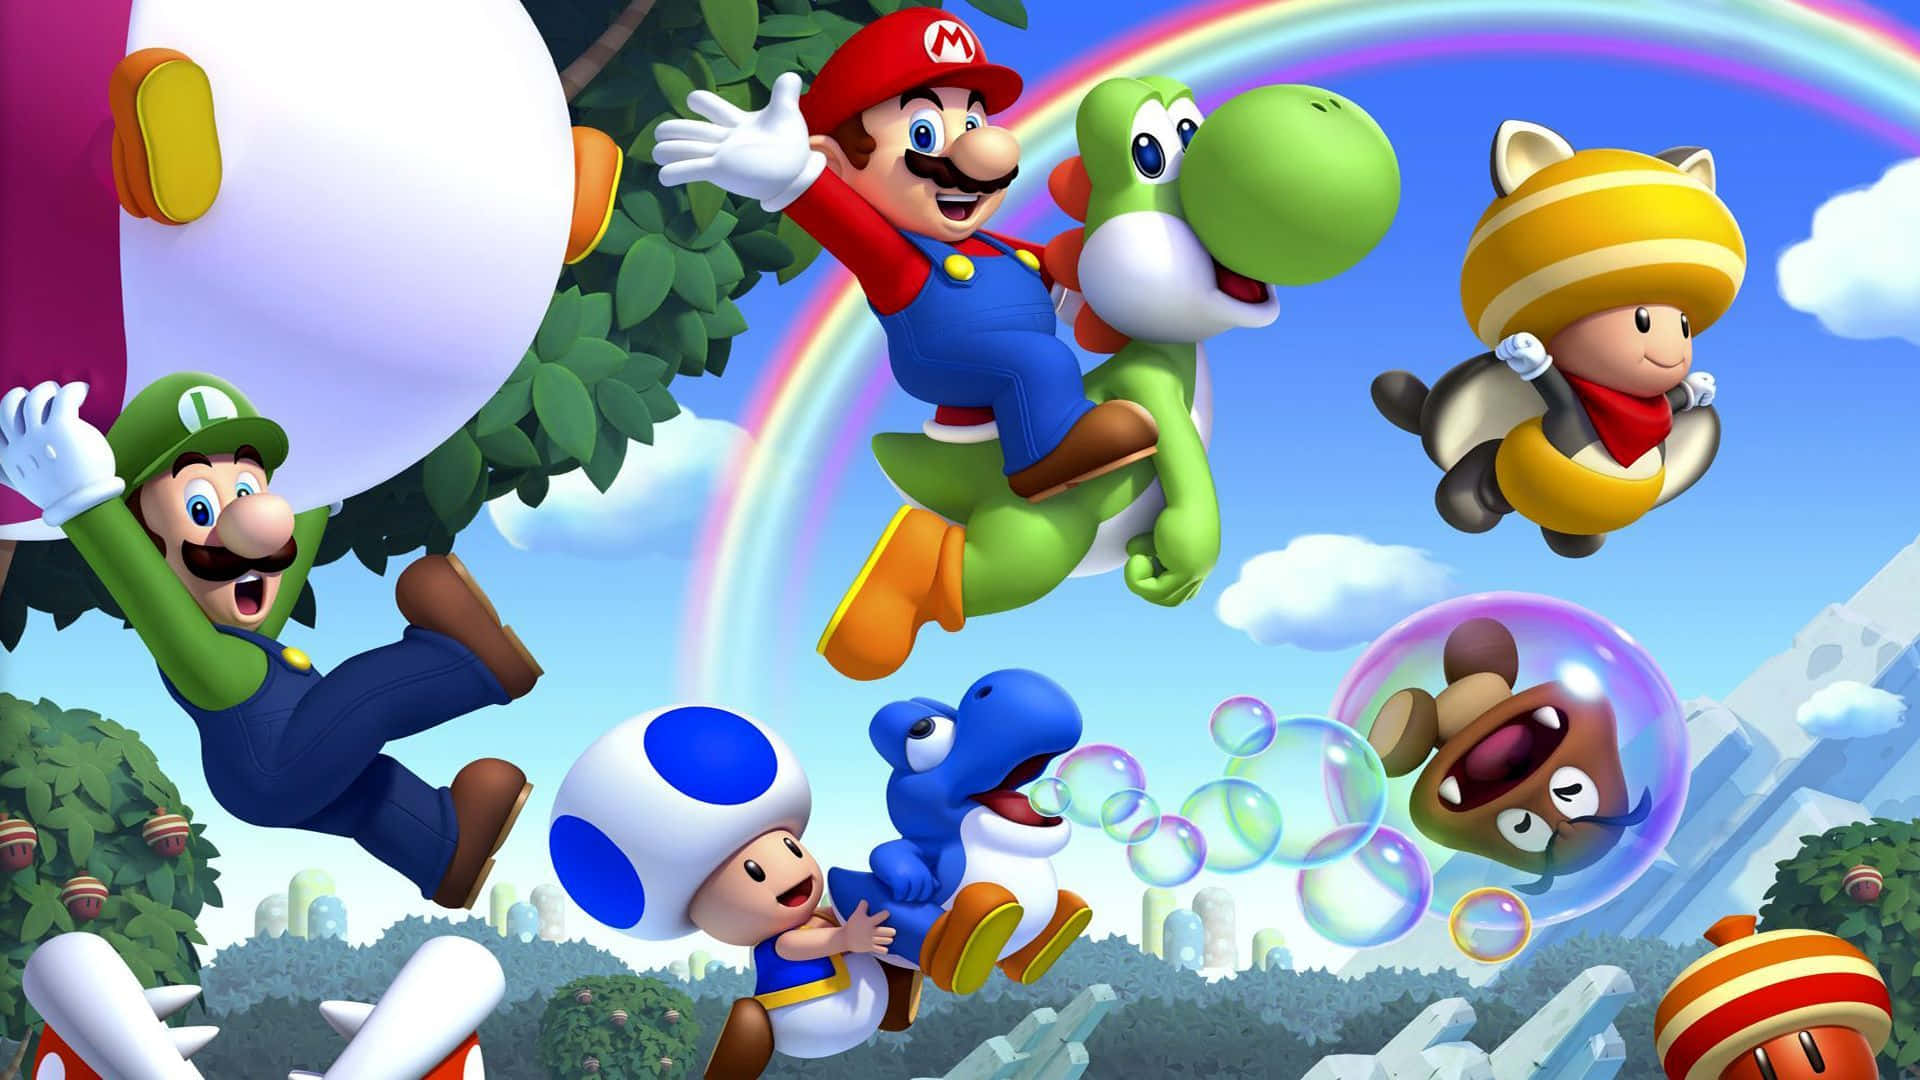 Tauchensie Ein In Die Cartoonartige Welt Des Klassischen Super Mario. Wallpaper